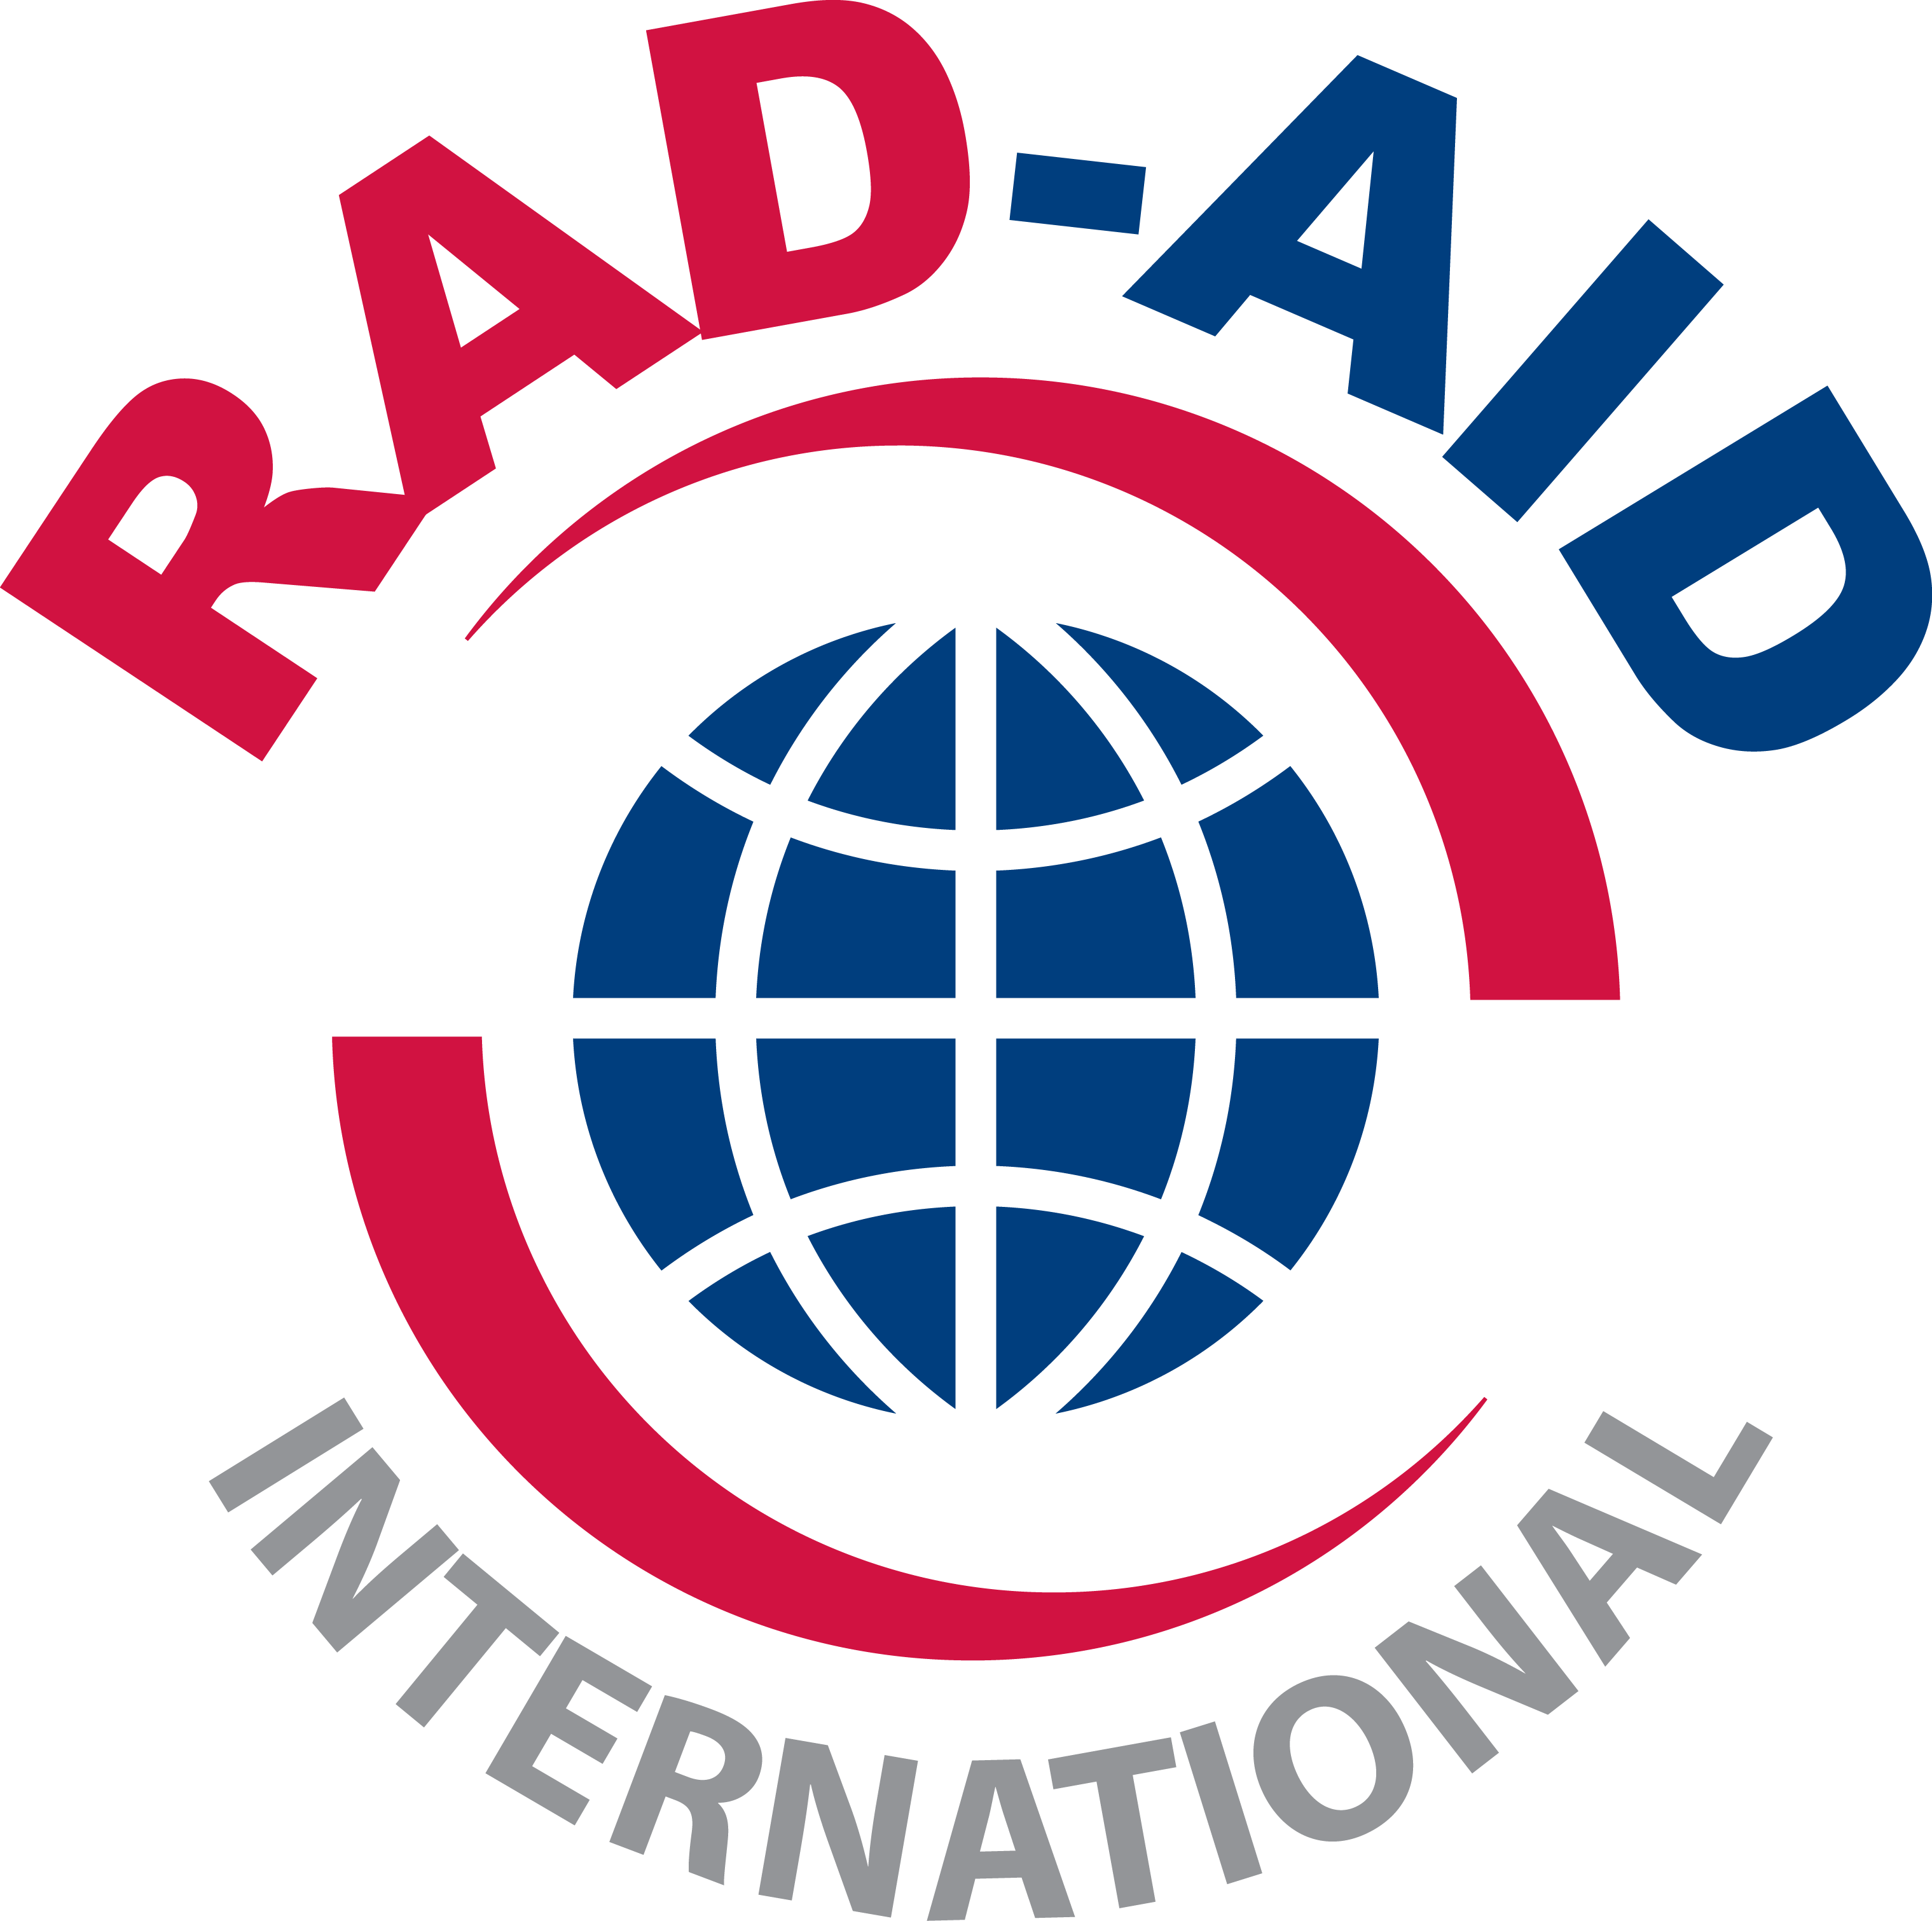 rad-aid Logo